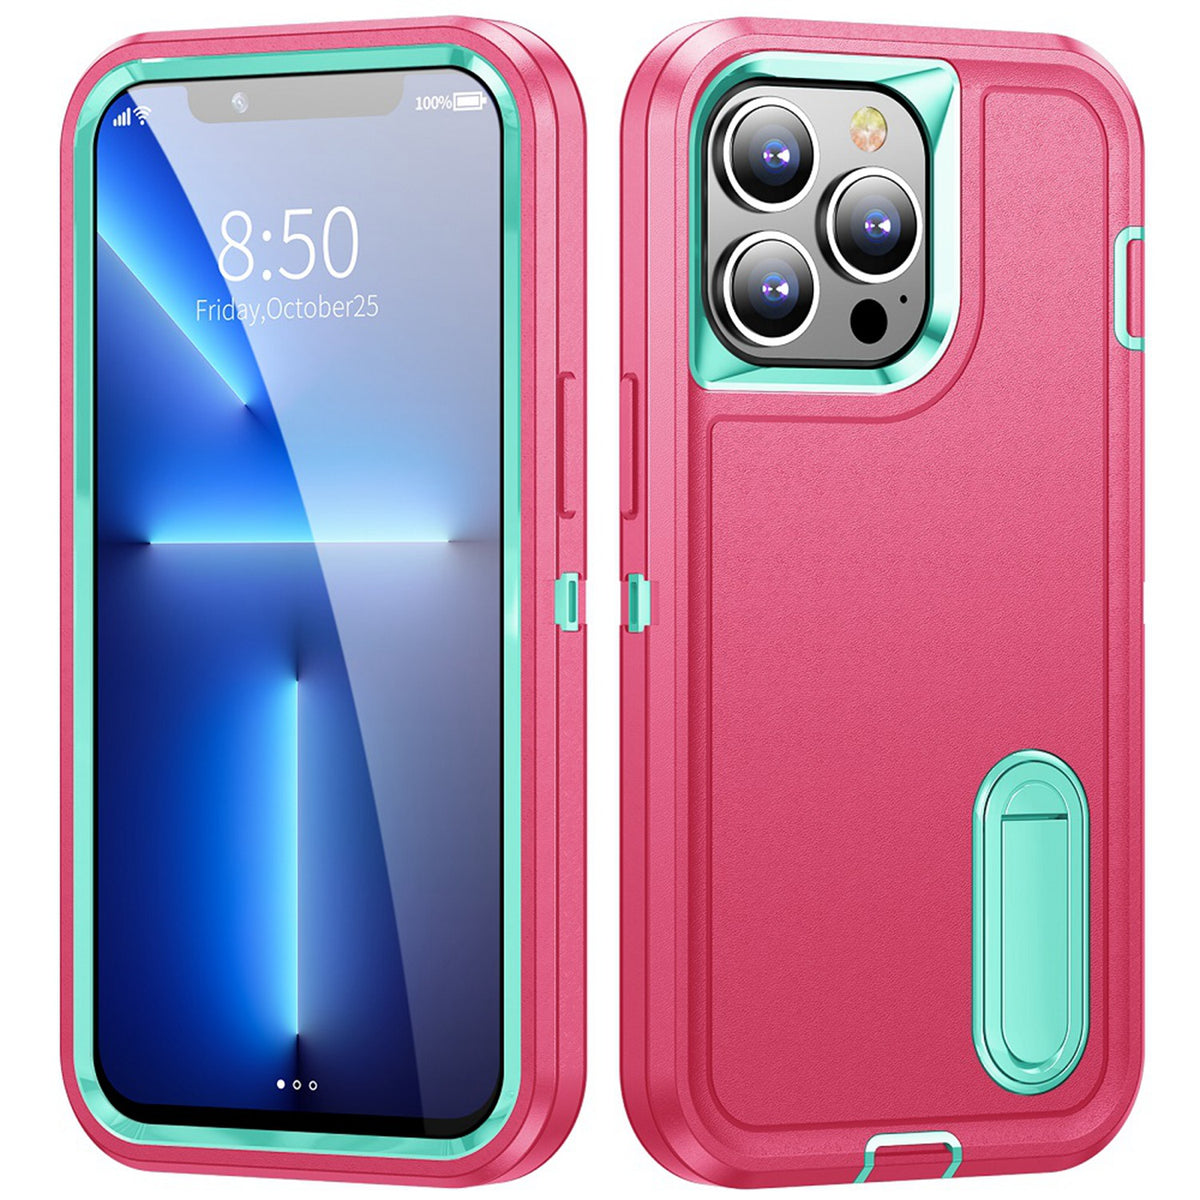 Iphone 7 / 8 / SE Tough Kickstand Case Pink Teal